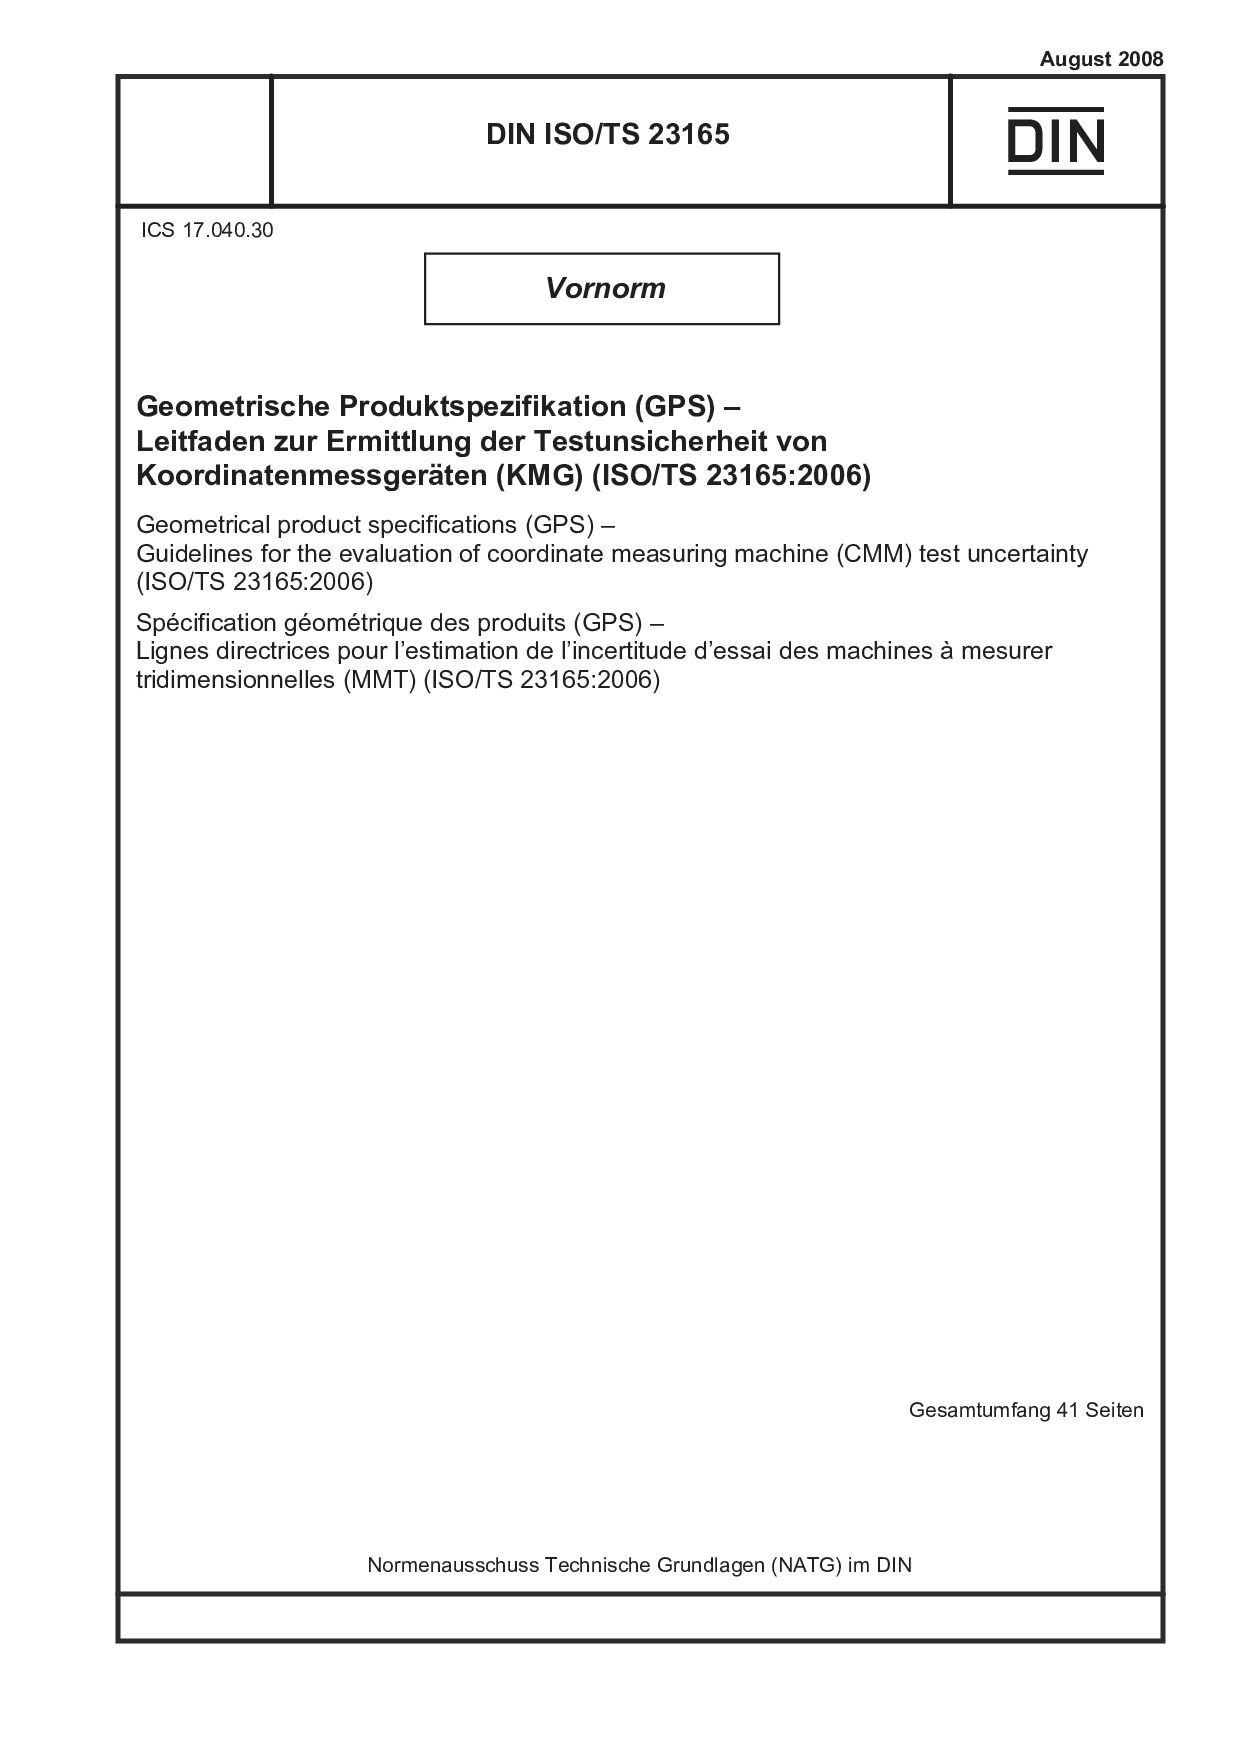 DIN ISO/TS 23165:2008封面图